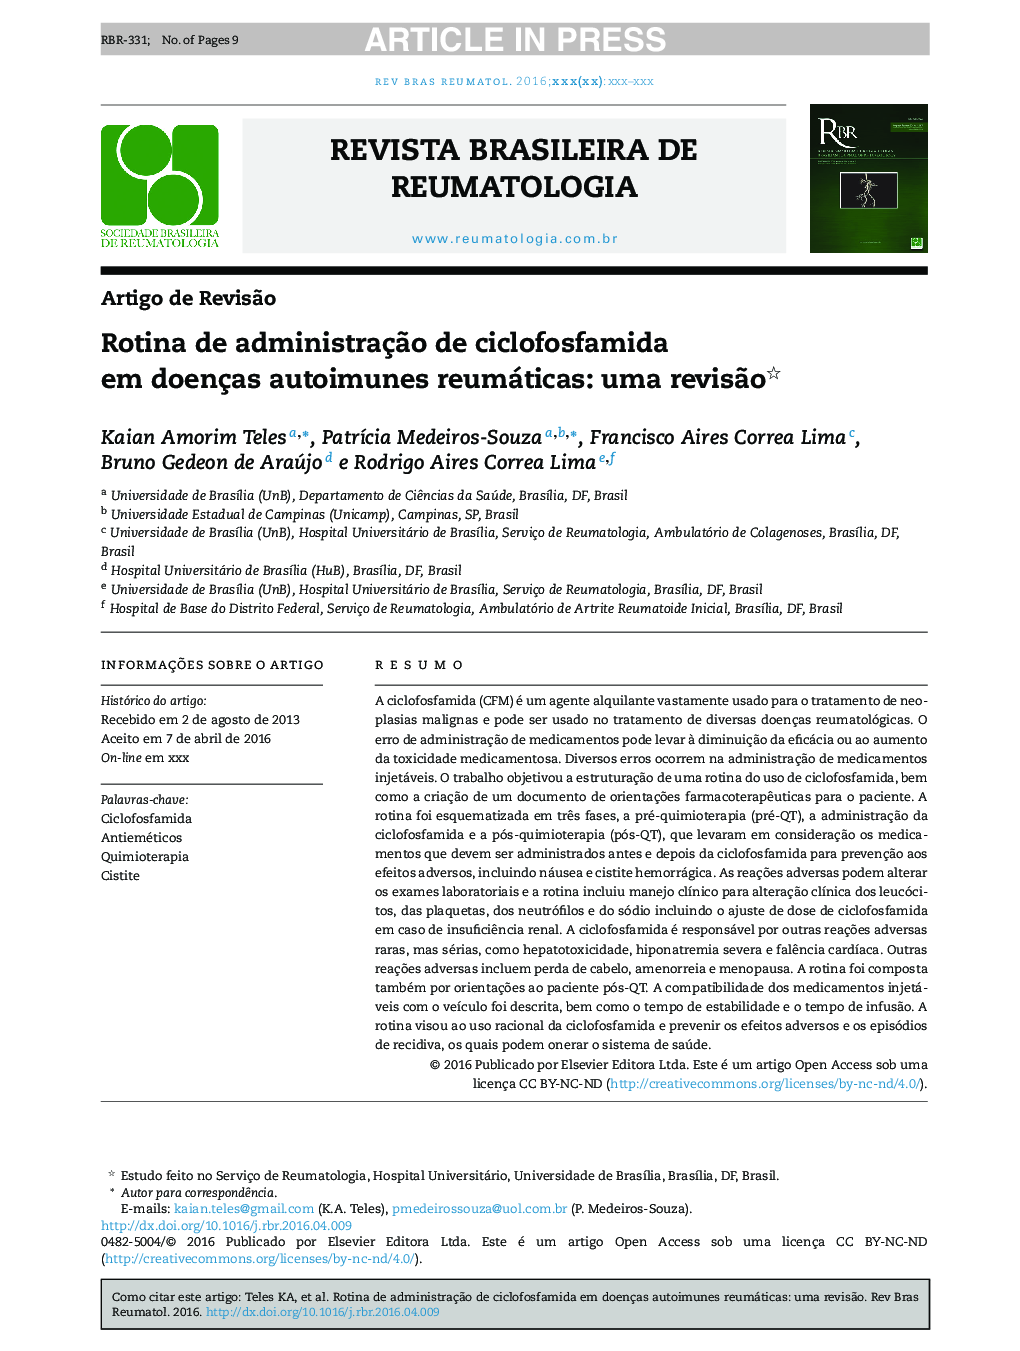 Rotina de administraçÃ£o de ciclofosfamida em doenças autoimunes reumáticas: uma revisÃ£o